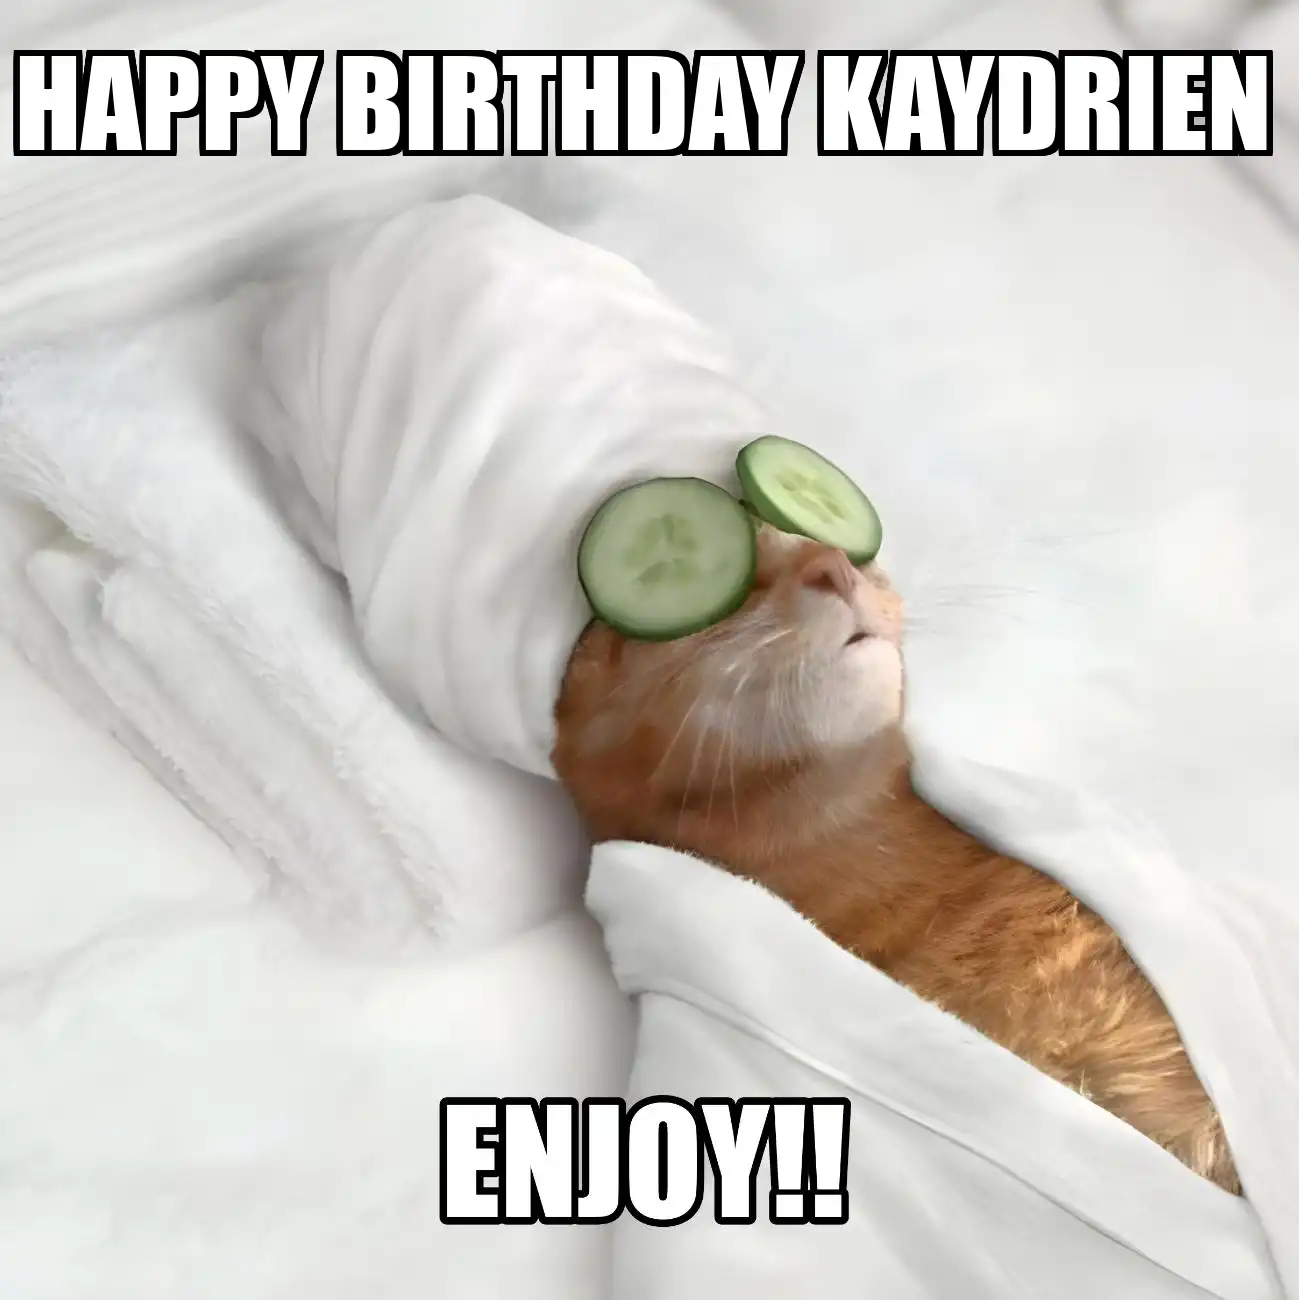 Happy Birthday Kaydrien Enjoy Cat Meme